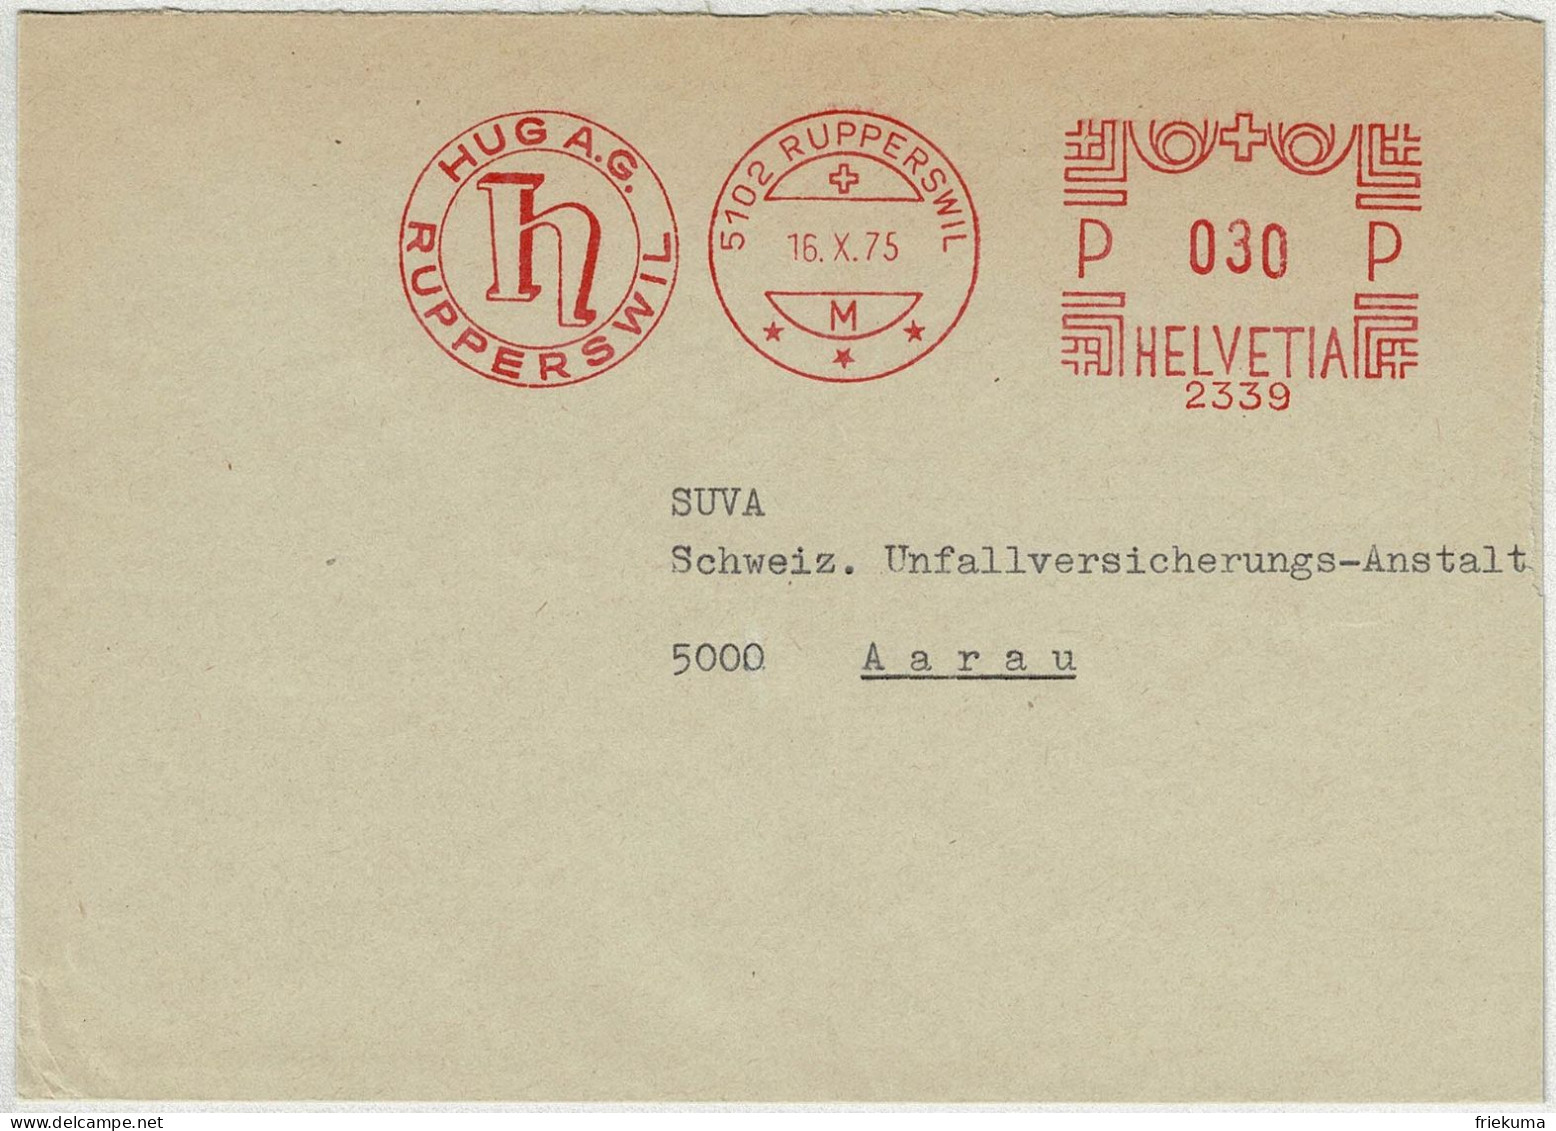 Schweiz 1975, Brief Freistempel / EMA / Meterstamp Hug Rupperswil - Aarau - Postage Meters